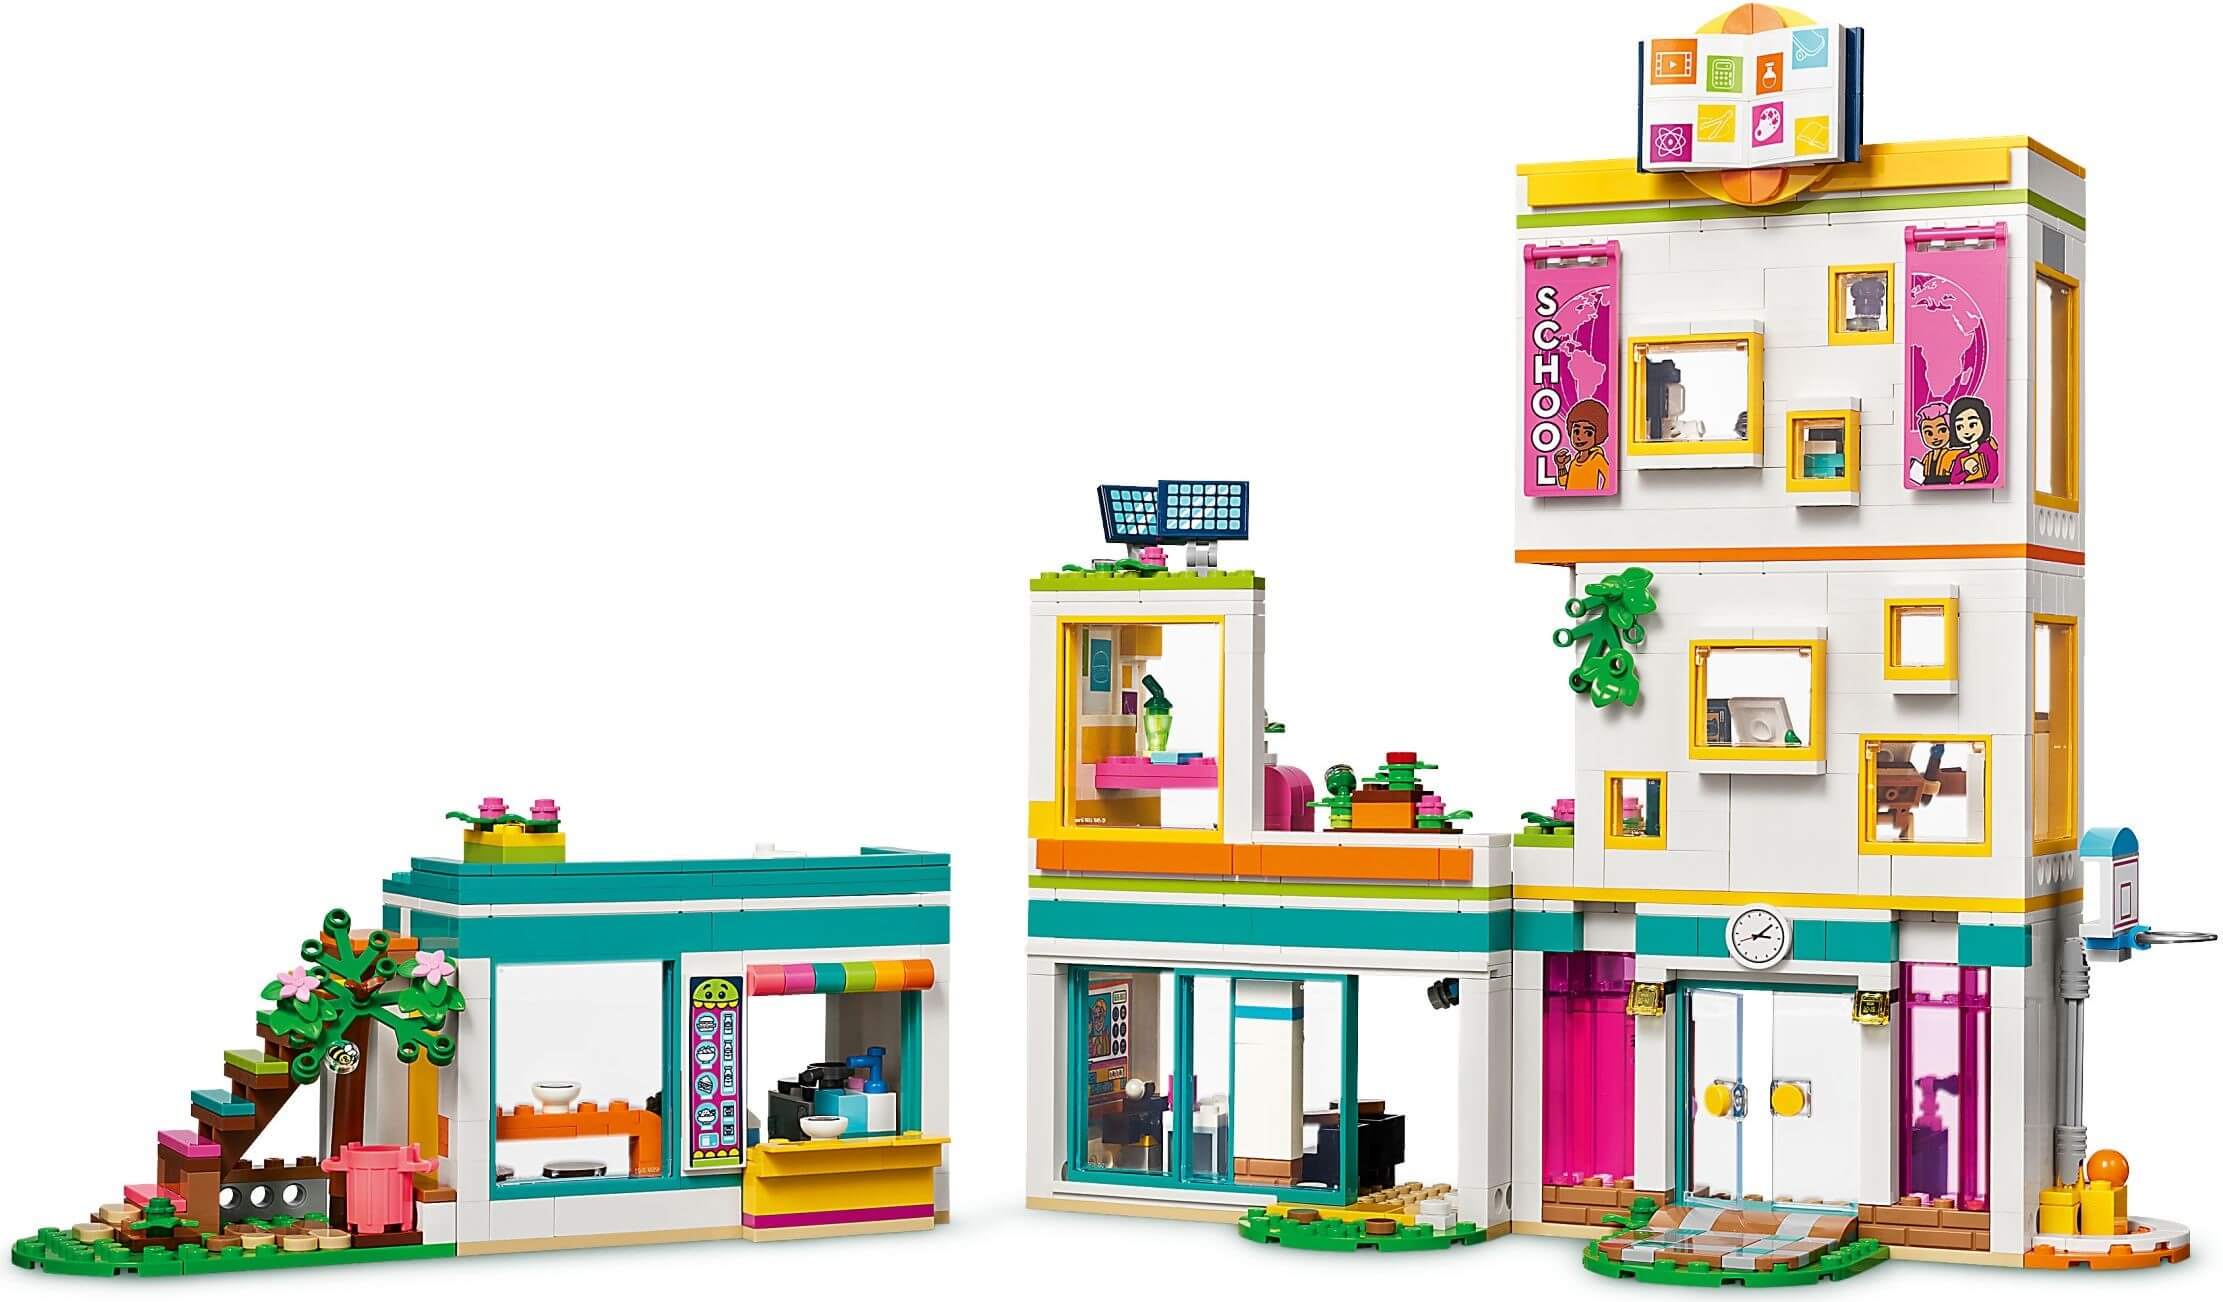 LEGO® Friends Heartlake International School 985 Piece Building Kit (41731)